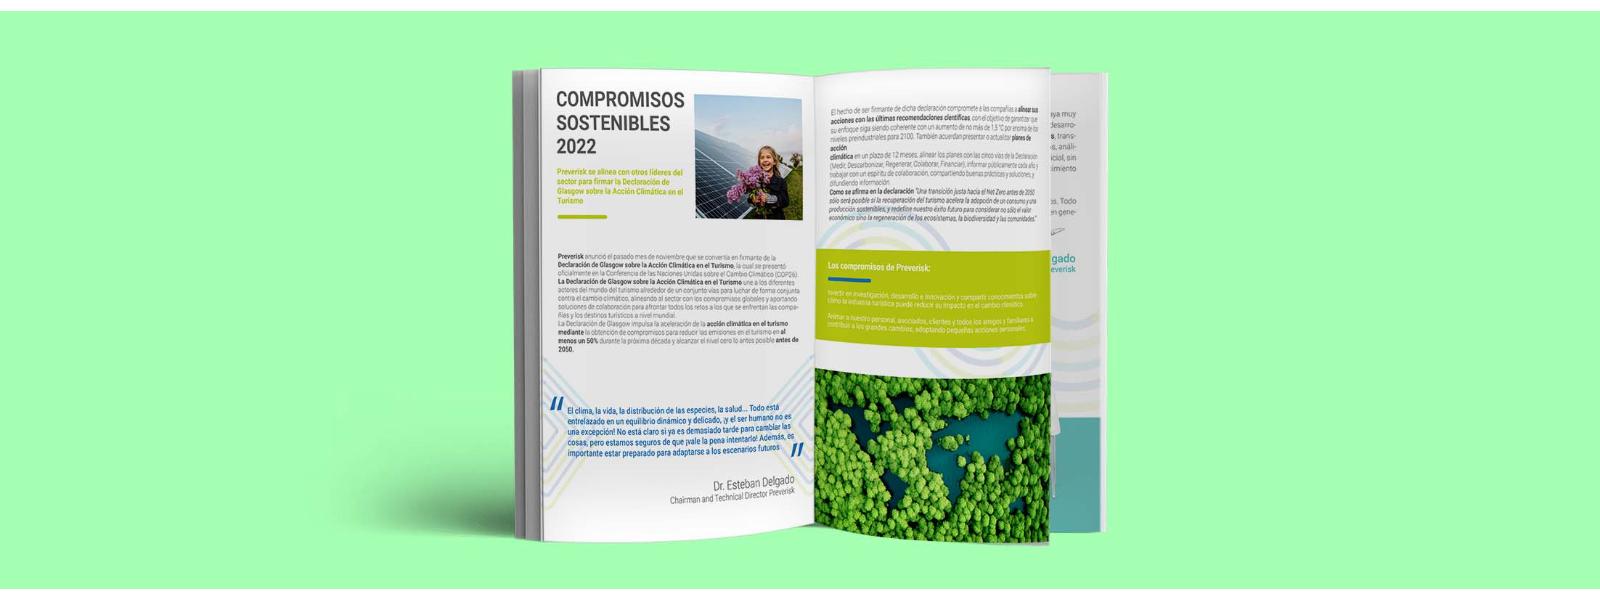 Img. principal: 3 entrevistas sobre sostenibilidad y 1 magazine, ¿Conocías estas opiniones?